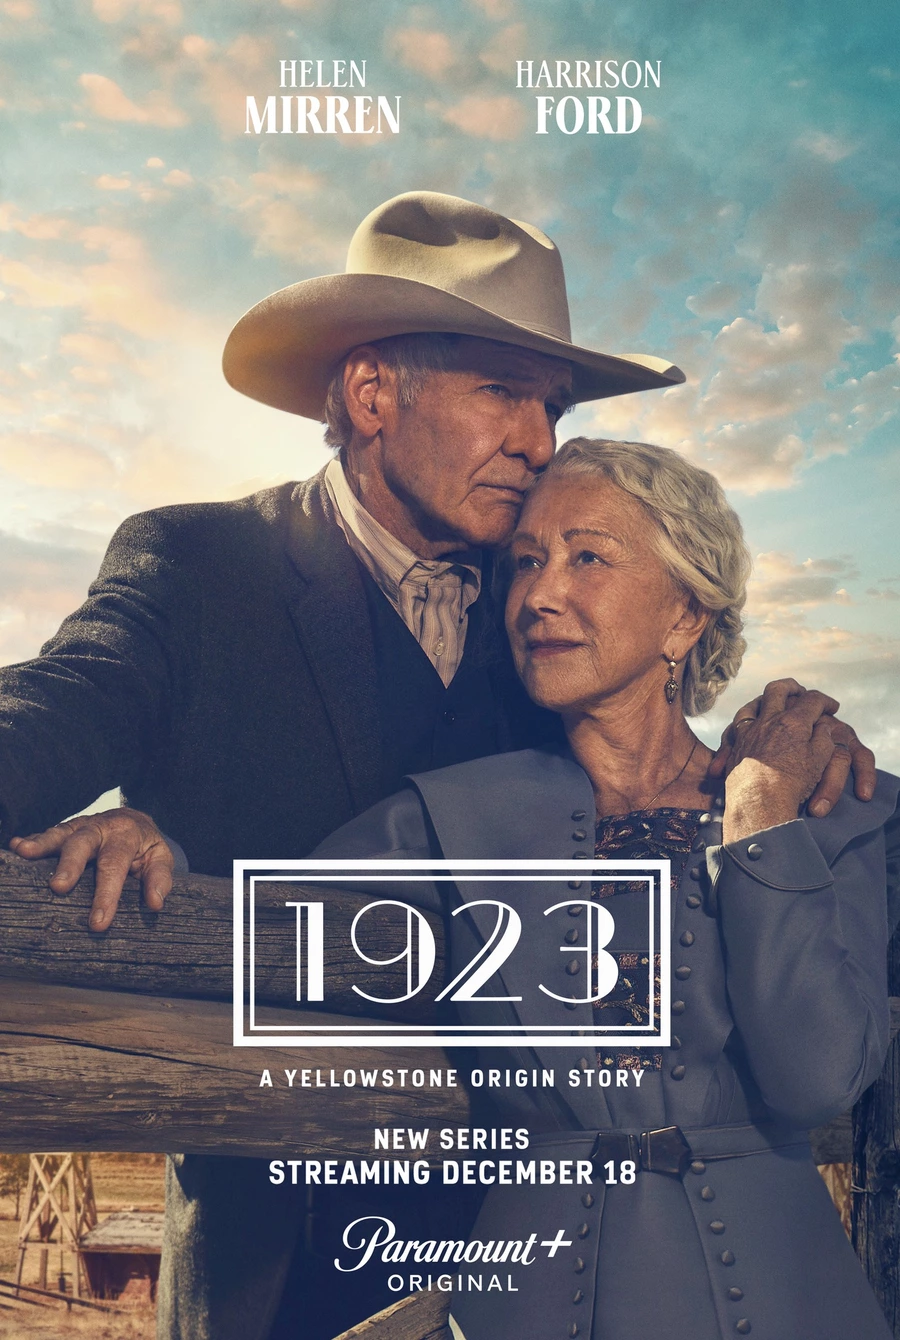 Harrison Ford et Helen Mirren sur l'affiche de la série «1923», qui sera diffusée pour la première fois le 18 décembre sur Paramount +.. Il s'agit d'un préquel au néo-western «Yellowstone» et d'une suite à «1883», qui racontera la vie des deuxième et troisième générations de la famille Dutton, éleveurs dans le Montana. Beaucoup de choses ont changé depuis que James et Margaret Dutton sont arrivés dans la région il y a 40 ans. Leurs enfants de 30 et 40 ans et leurs petits-enfants de 20 ans doivent faire face aux défis d'un nouveau siècle : l'expansion de la mécanisation, le renforcement du gouvernement local et la concurrence pour les ressources avec les autres éleveurs. Aujourd'hui, la famille est dirigée par leur oncle et sa femme.